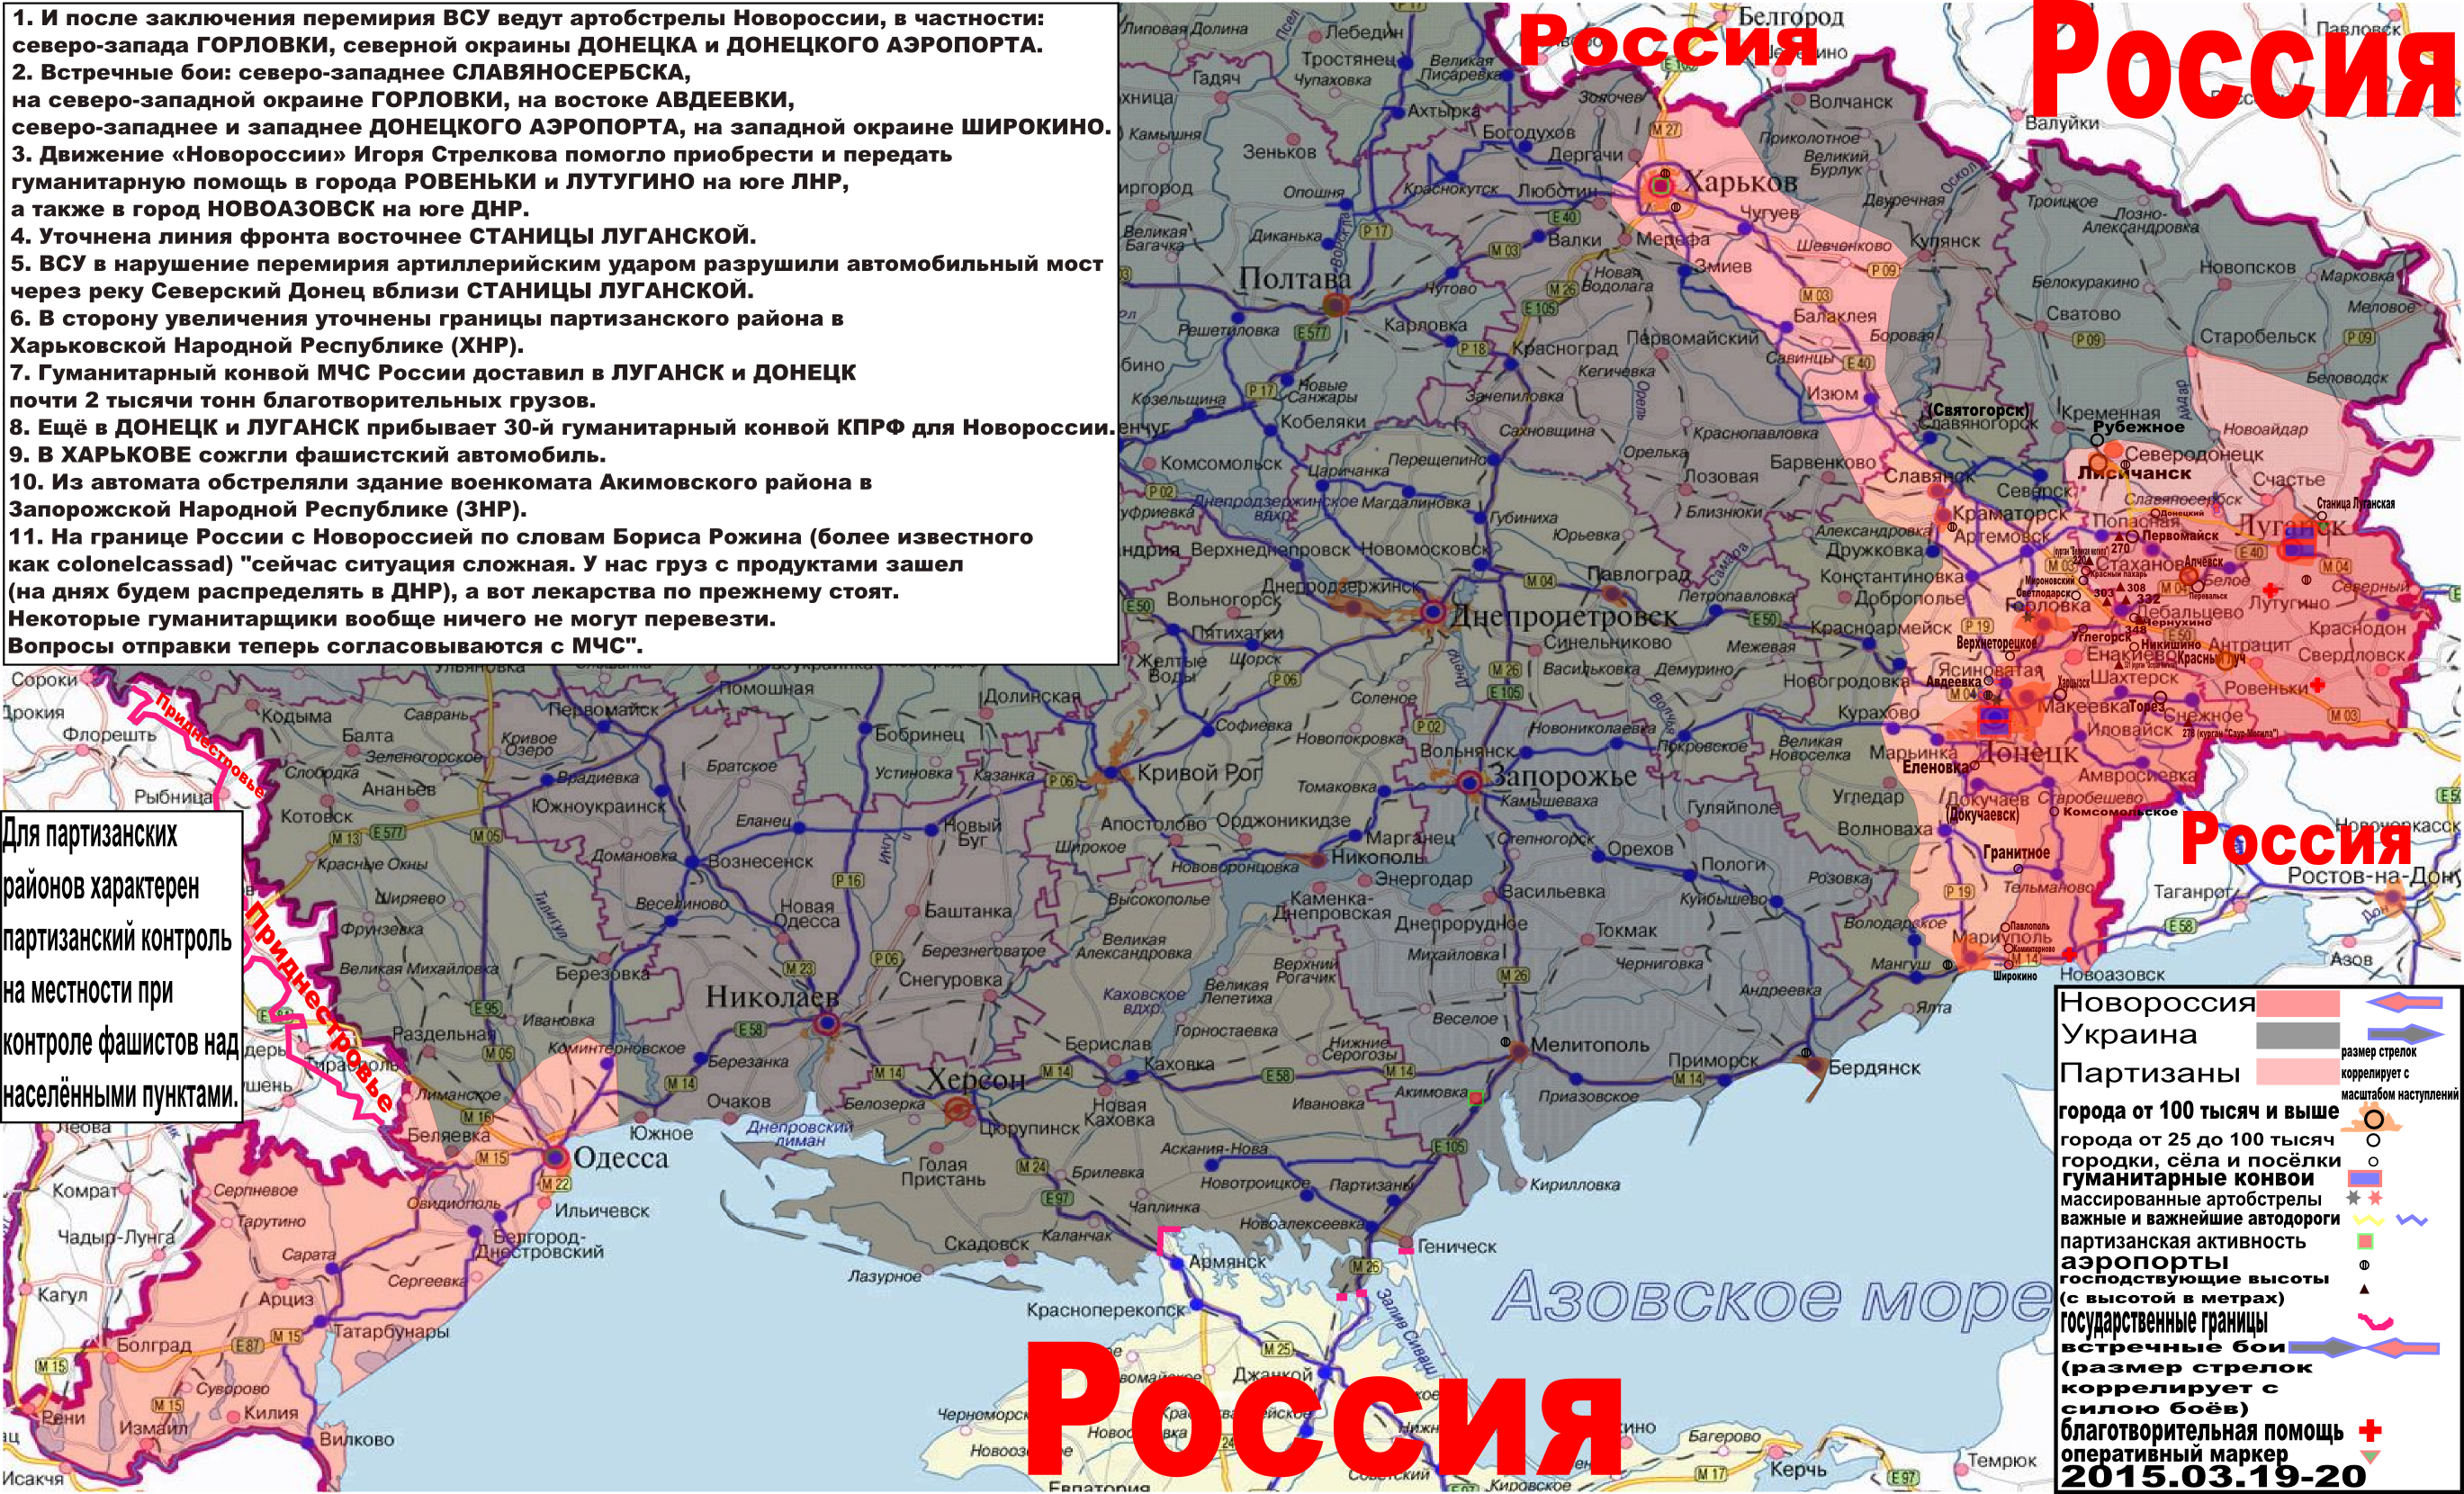 Карта боевых действий и гуманитарных вестей Новороссии с партизанскими районами за 19-20 марта 2015